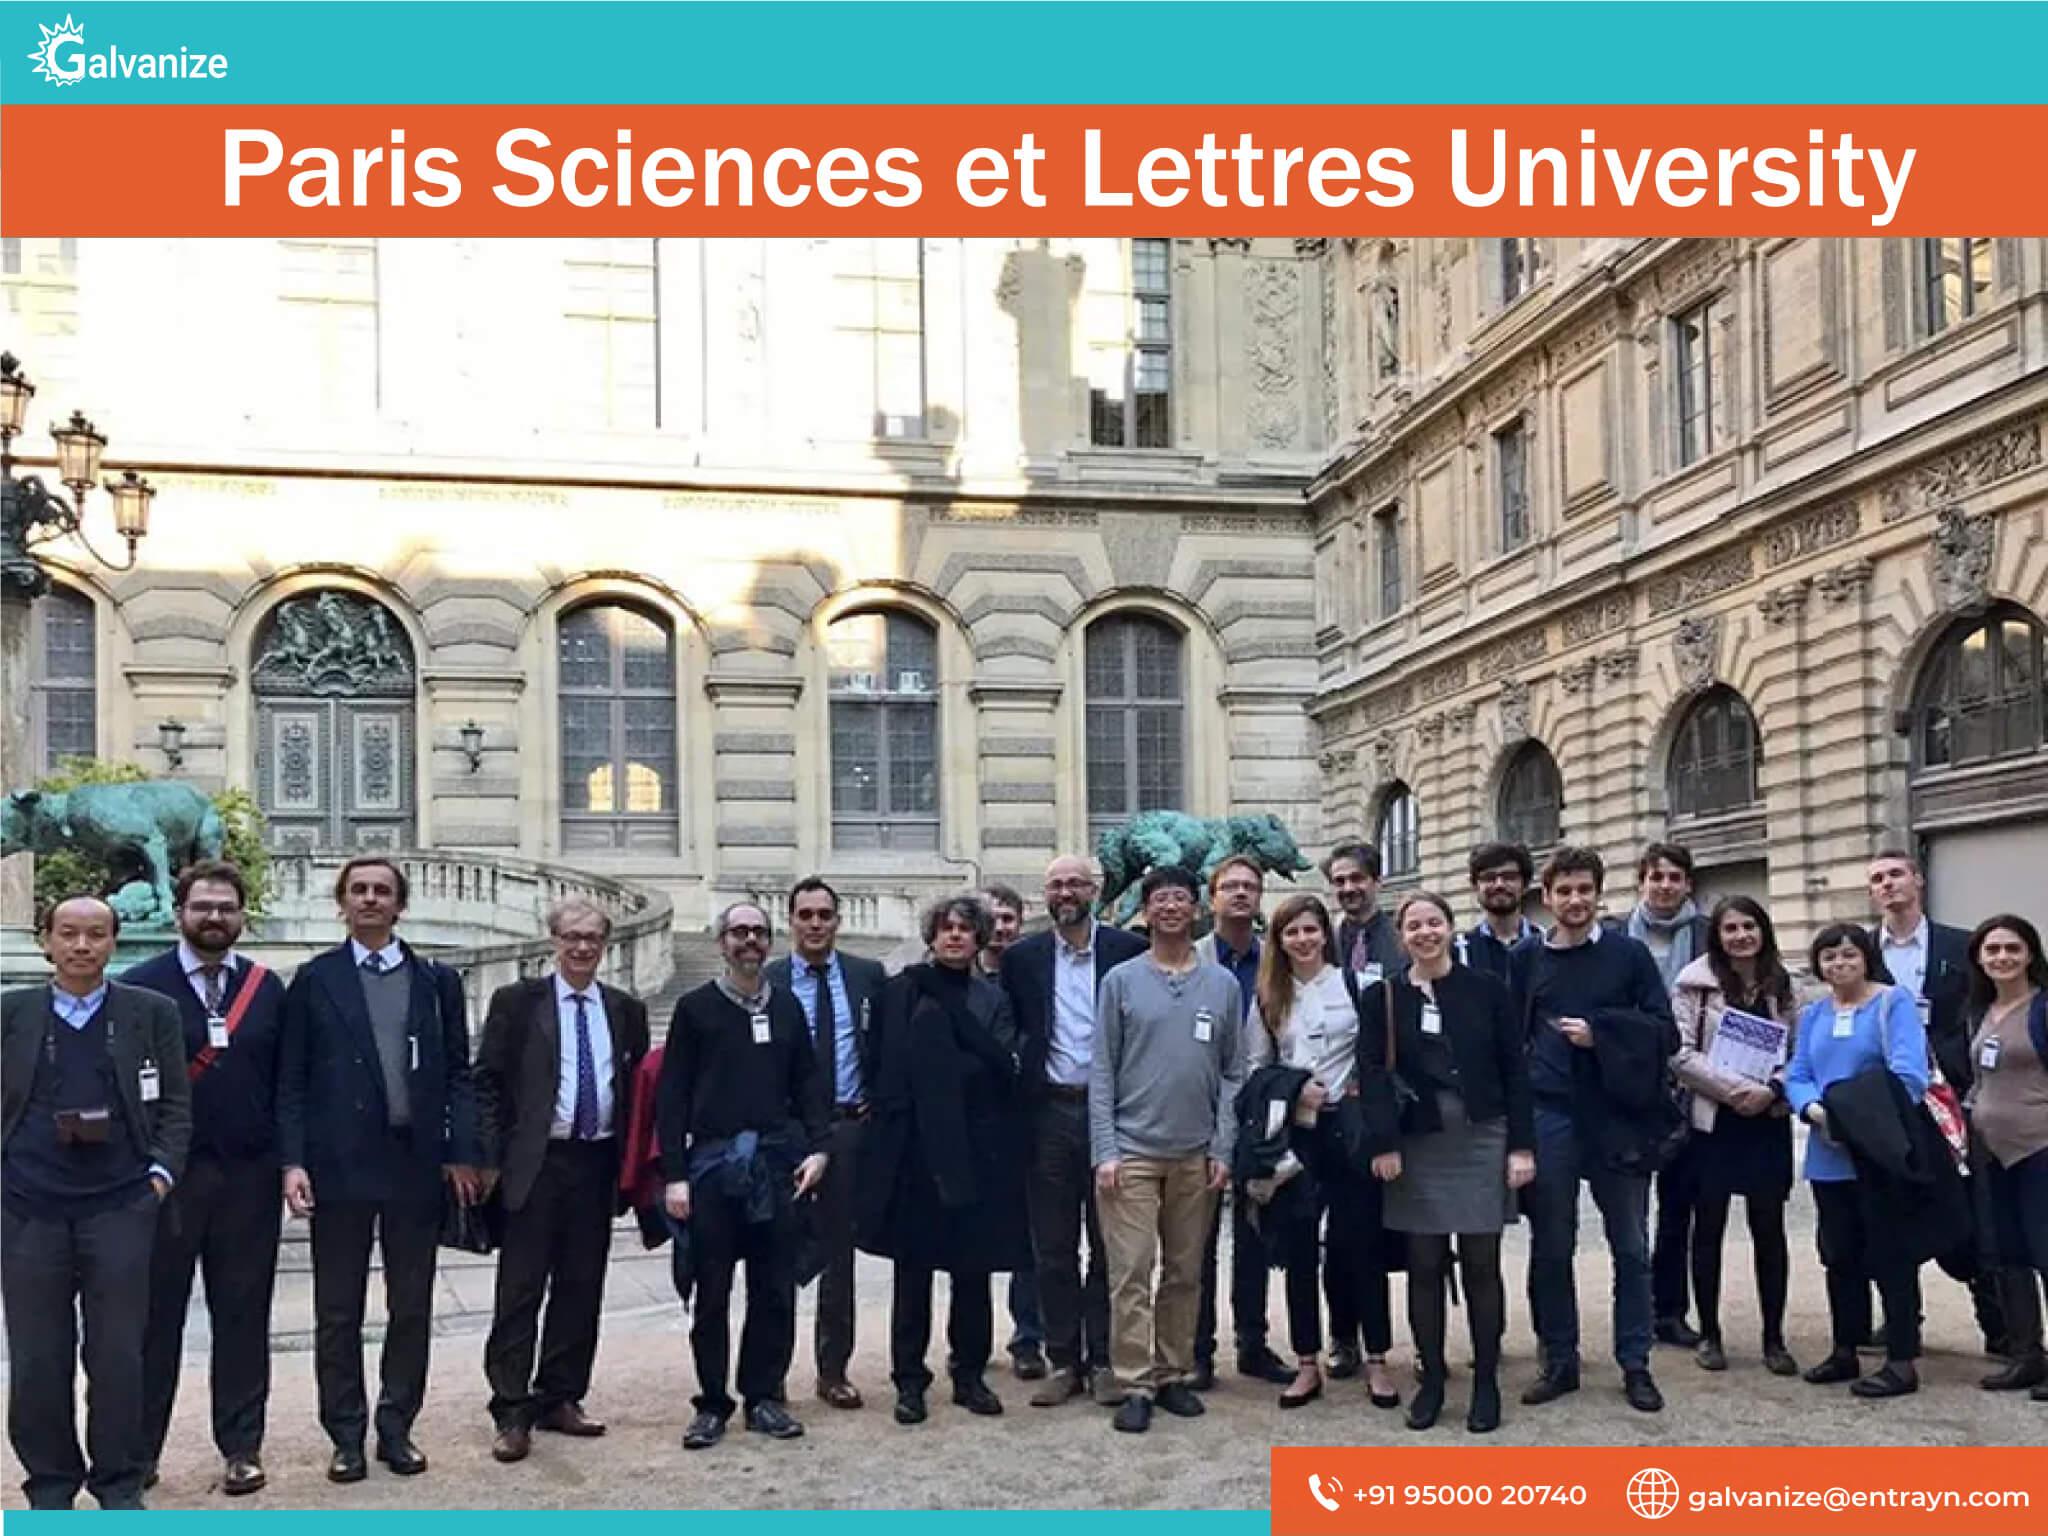 Paris Sciences et Lettres University